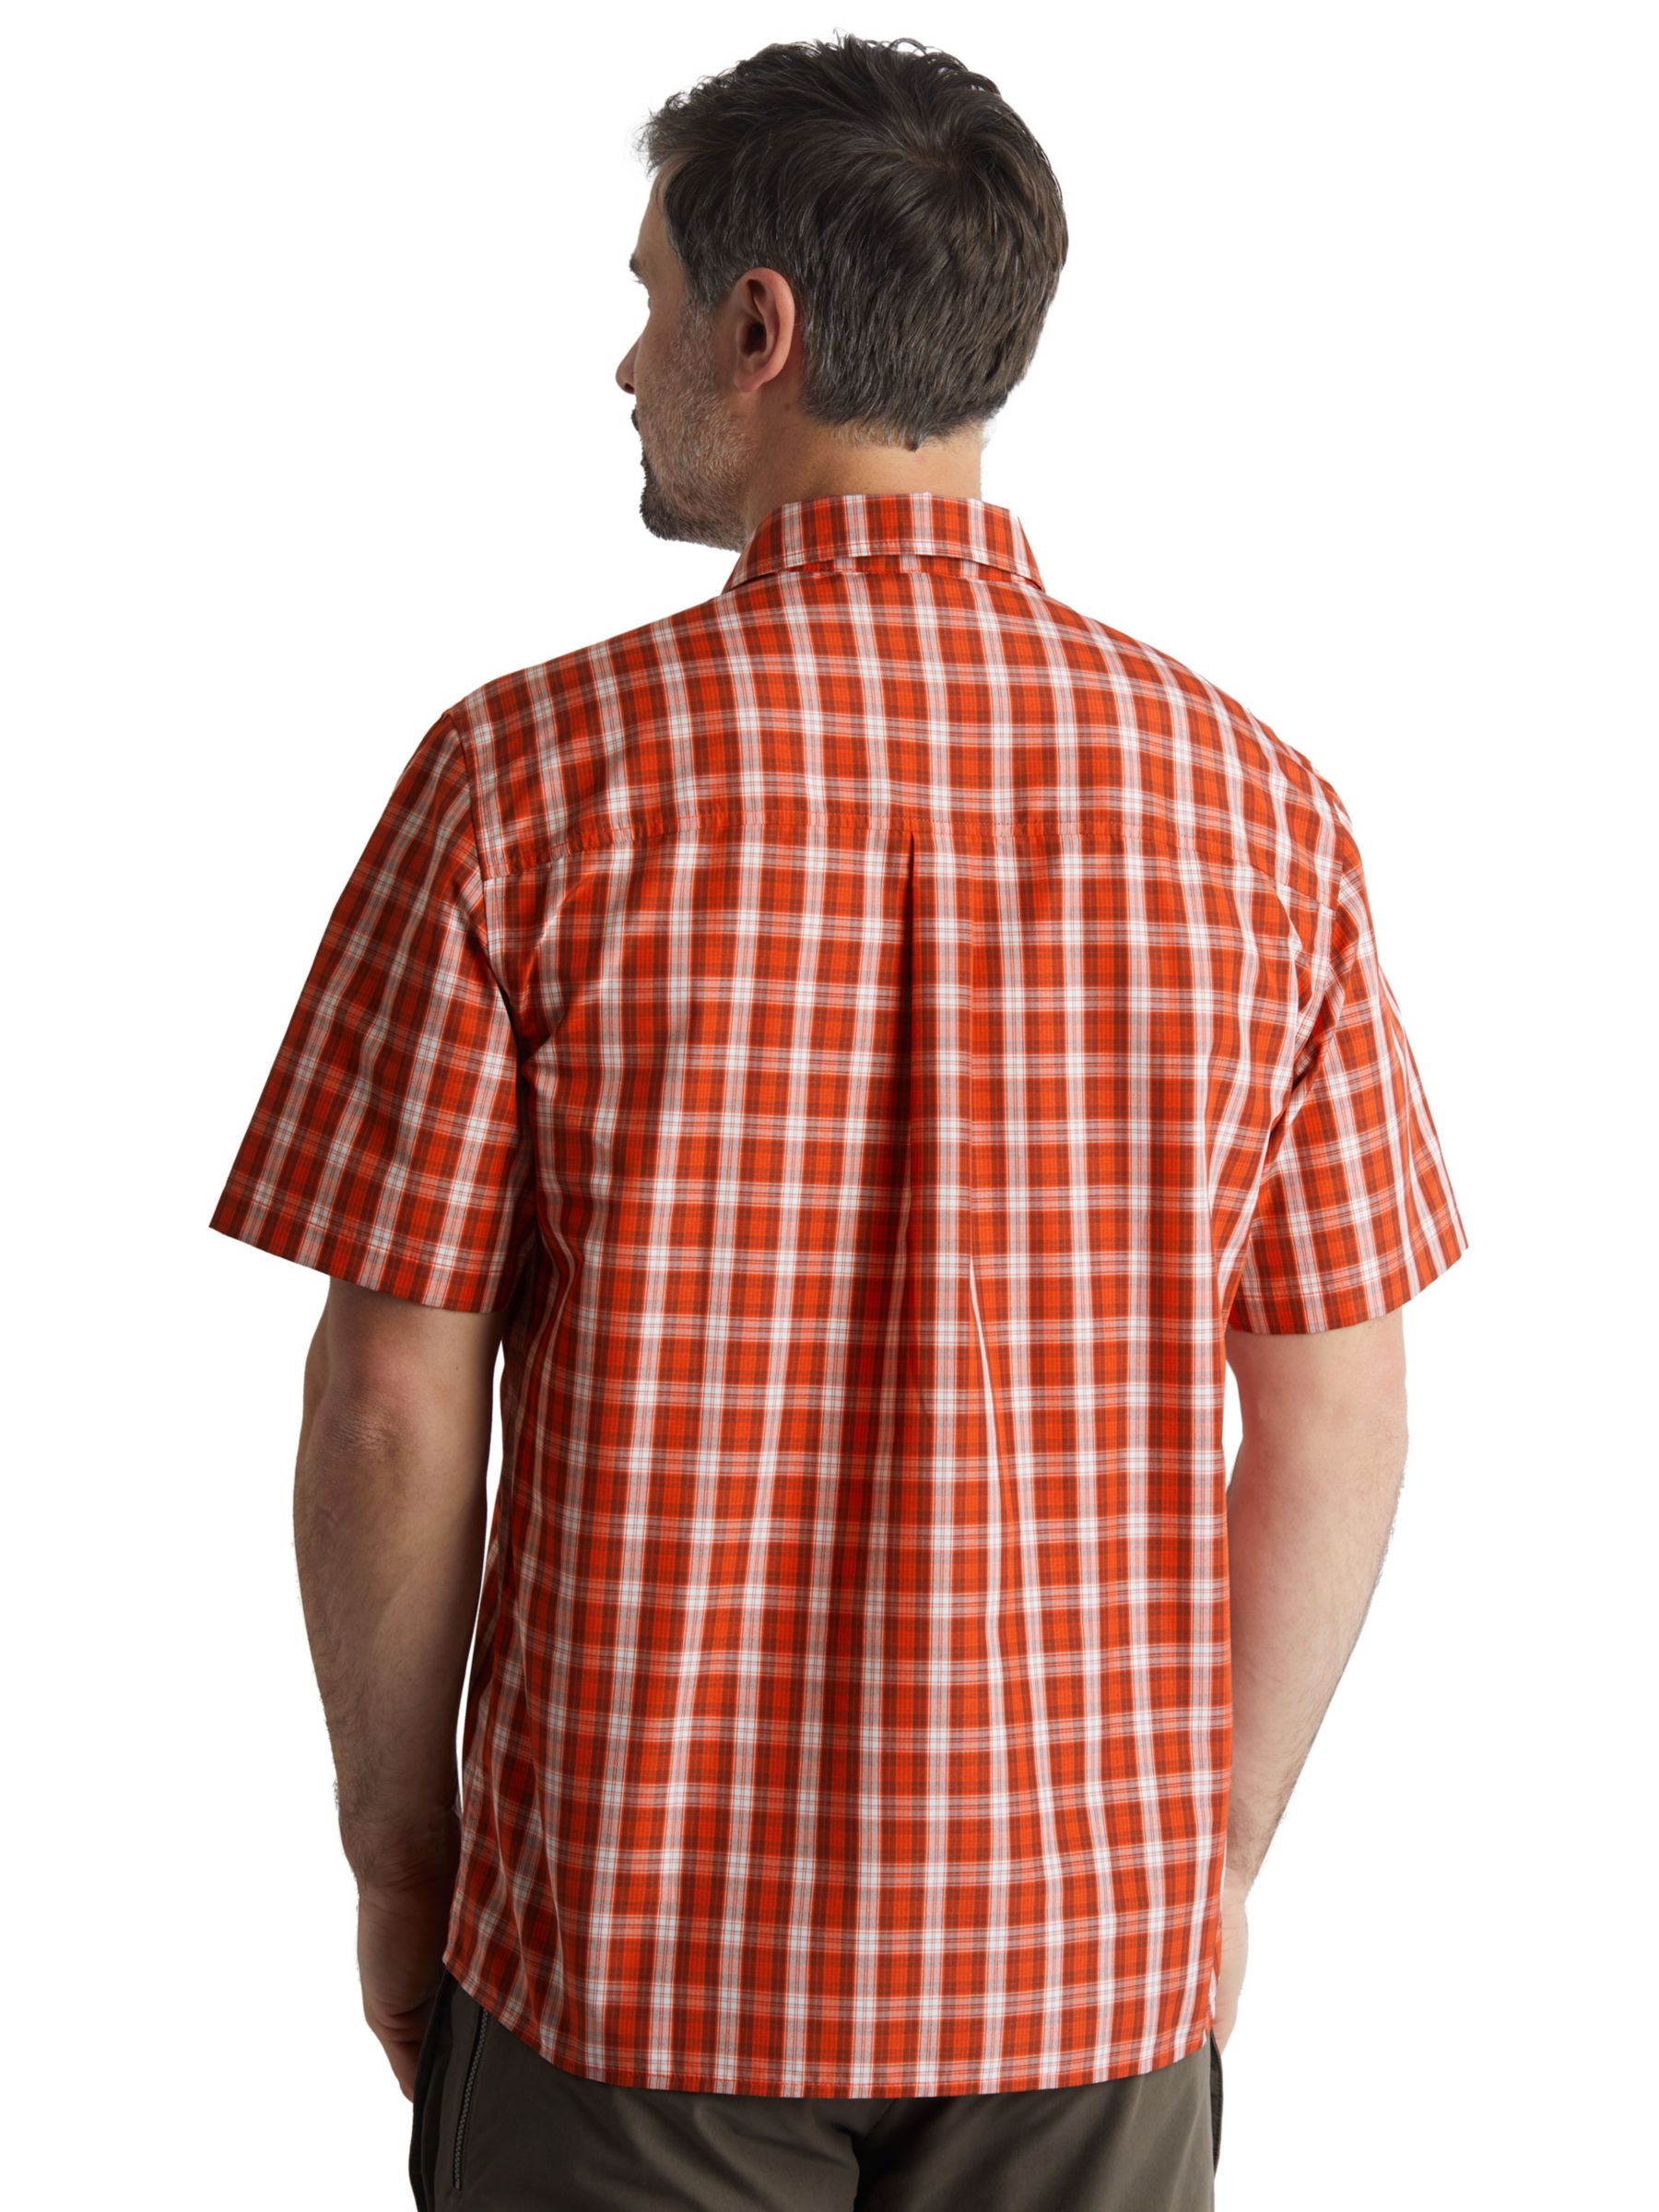 Rohan Coast Short Sleeve Checked Shirt, Solar Orange, S